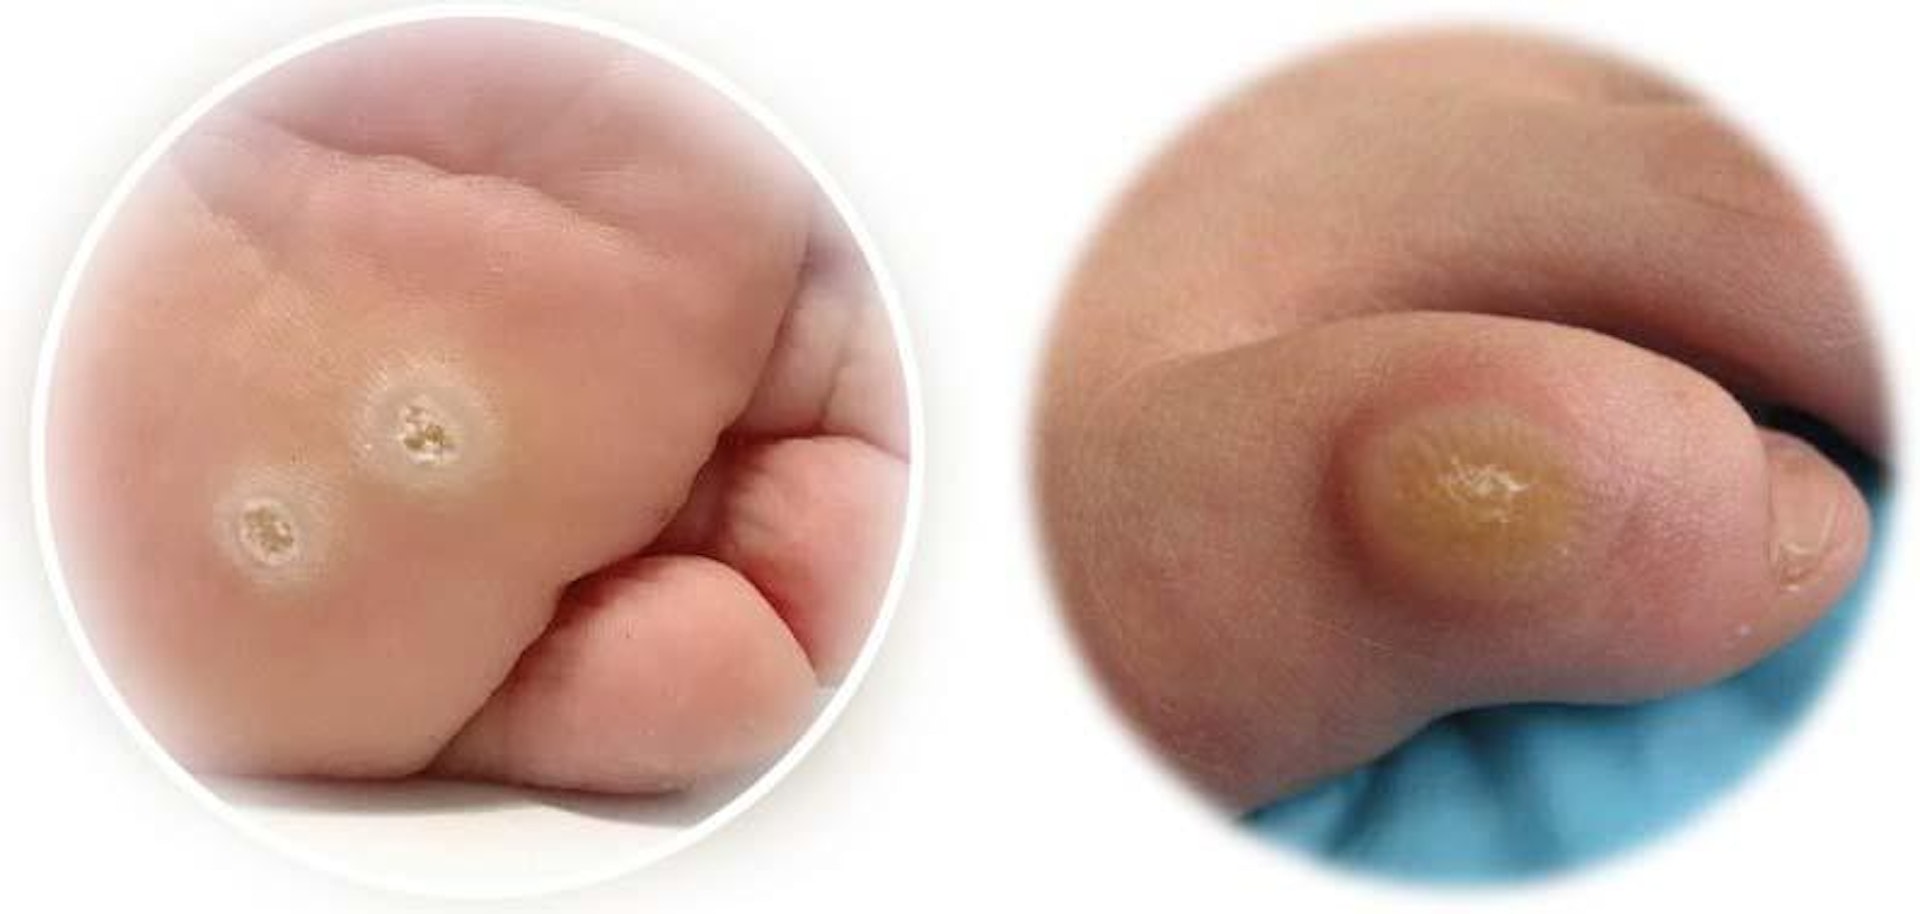 （圖左）足底疣與(圖右)雞眼相似，細心觀察，足底疣有微小黑點，小黑點隨病毒擴散數量而增多。